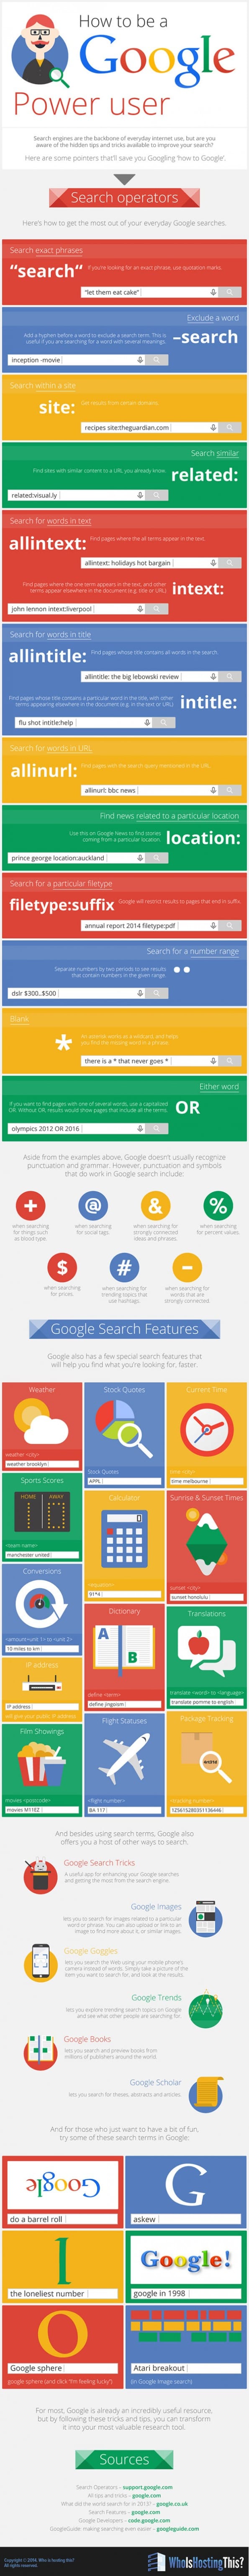 Effectiever zoeken in Google - tips & trics [infographic]